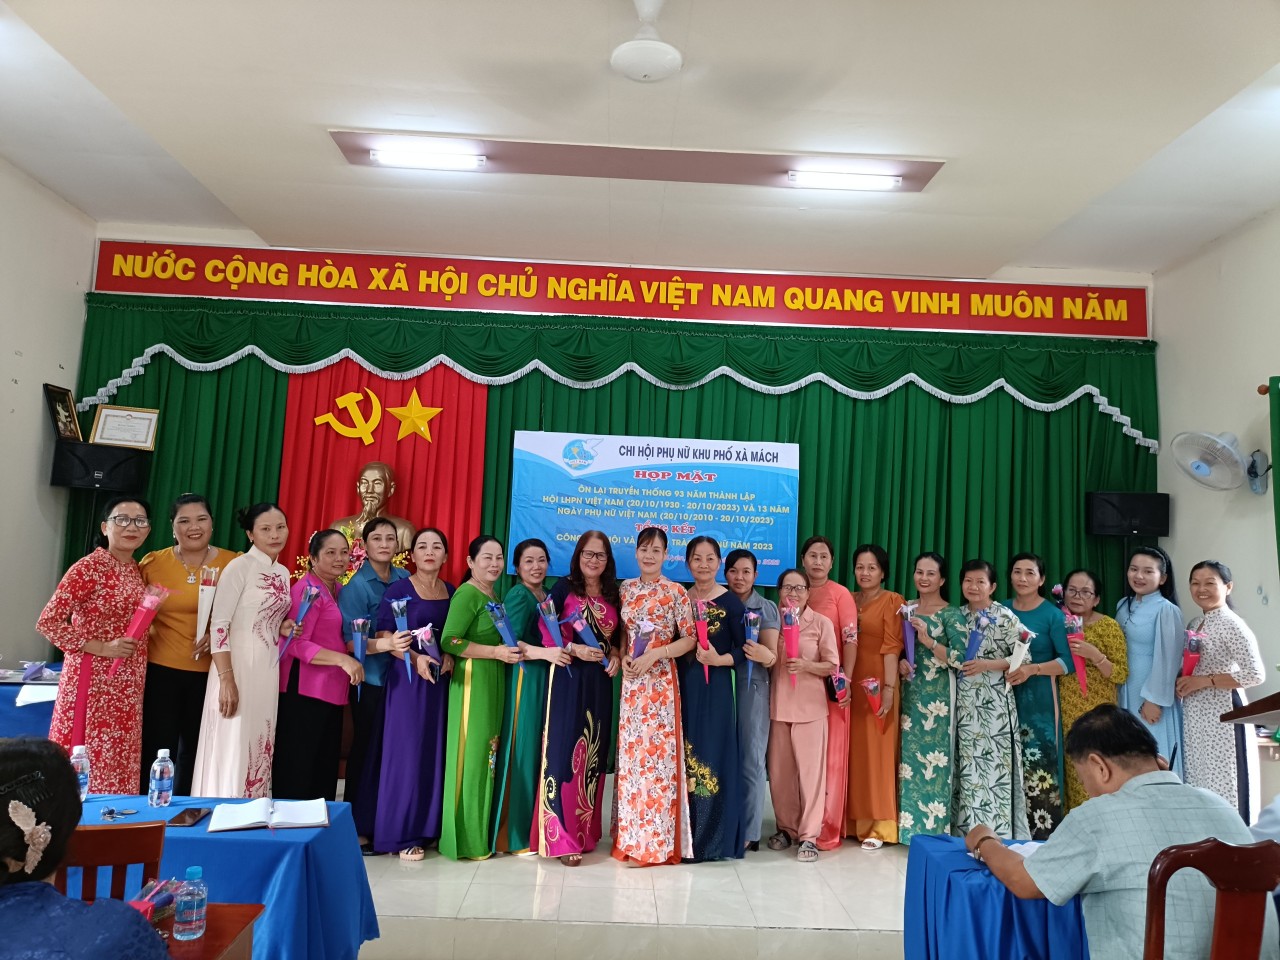 Sôi nổi các hoạt động chào mừng kỷ niệm 93 năm ngày thành lập Hội Liên hiệp Phụ nữ Việt Nam và 13 năm Ngày Phụ nữ Việt Nam tại Chi hội phụ nữ các khu phố